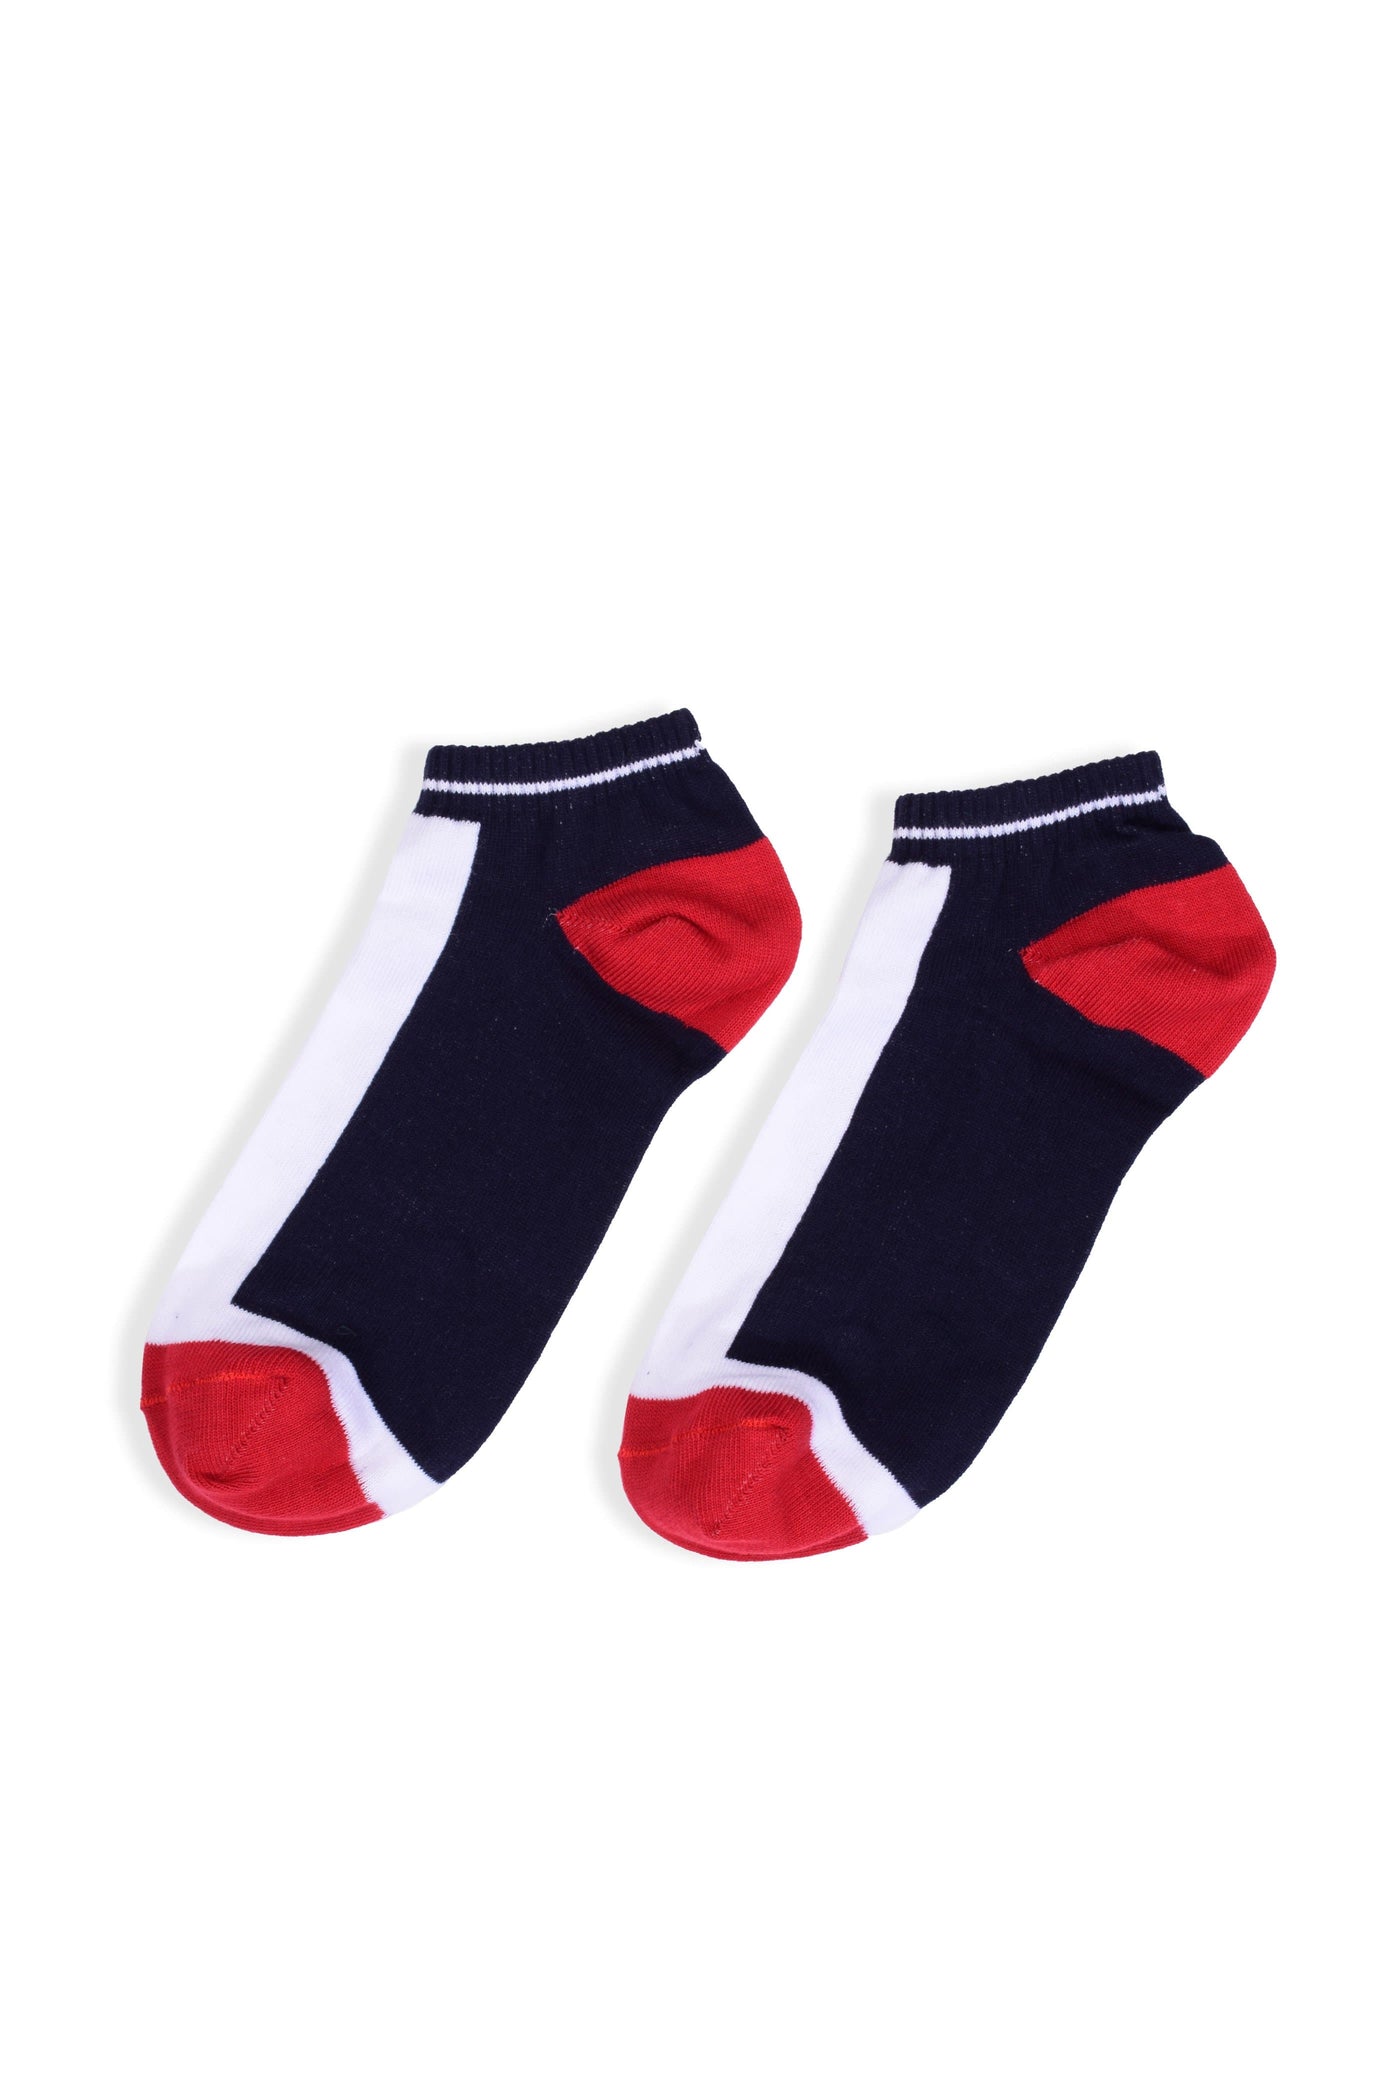 Short Socks / S20-3-127